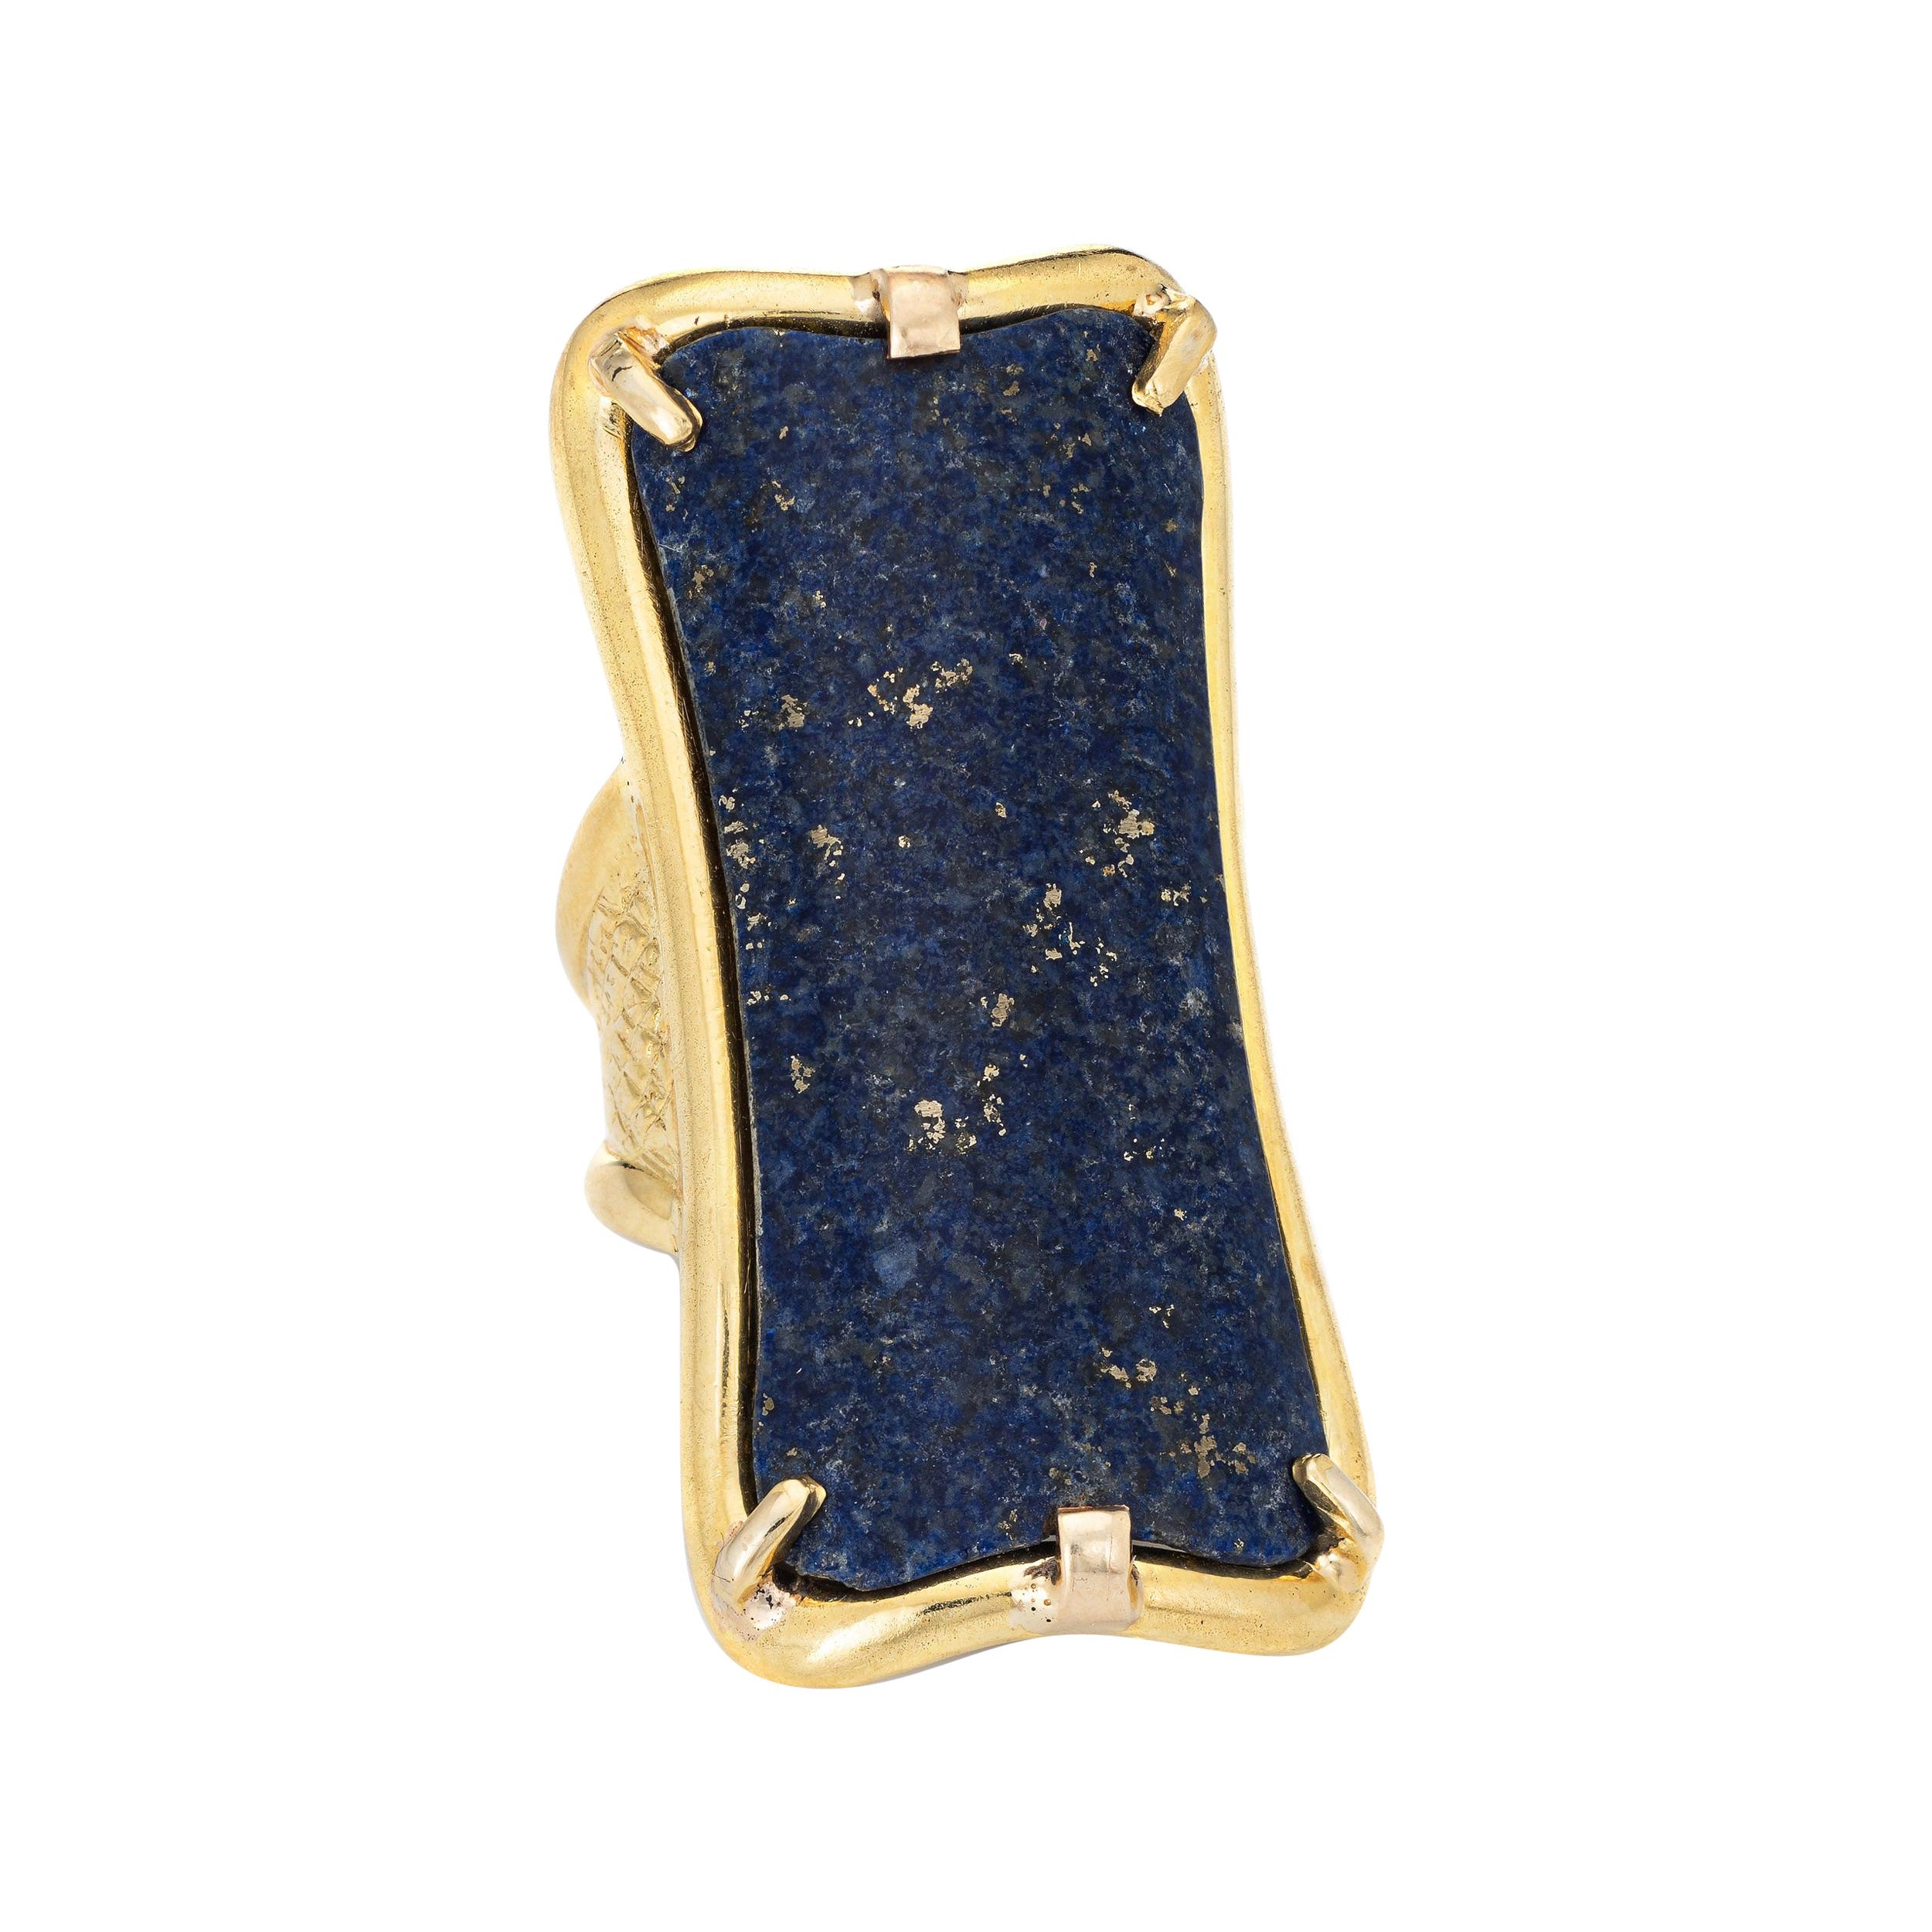 Huge Lapis Lazuli Ring Vintage 18k Yellow Gold Cocktail Jewelry Estate